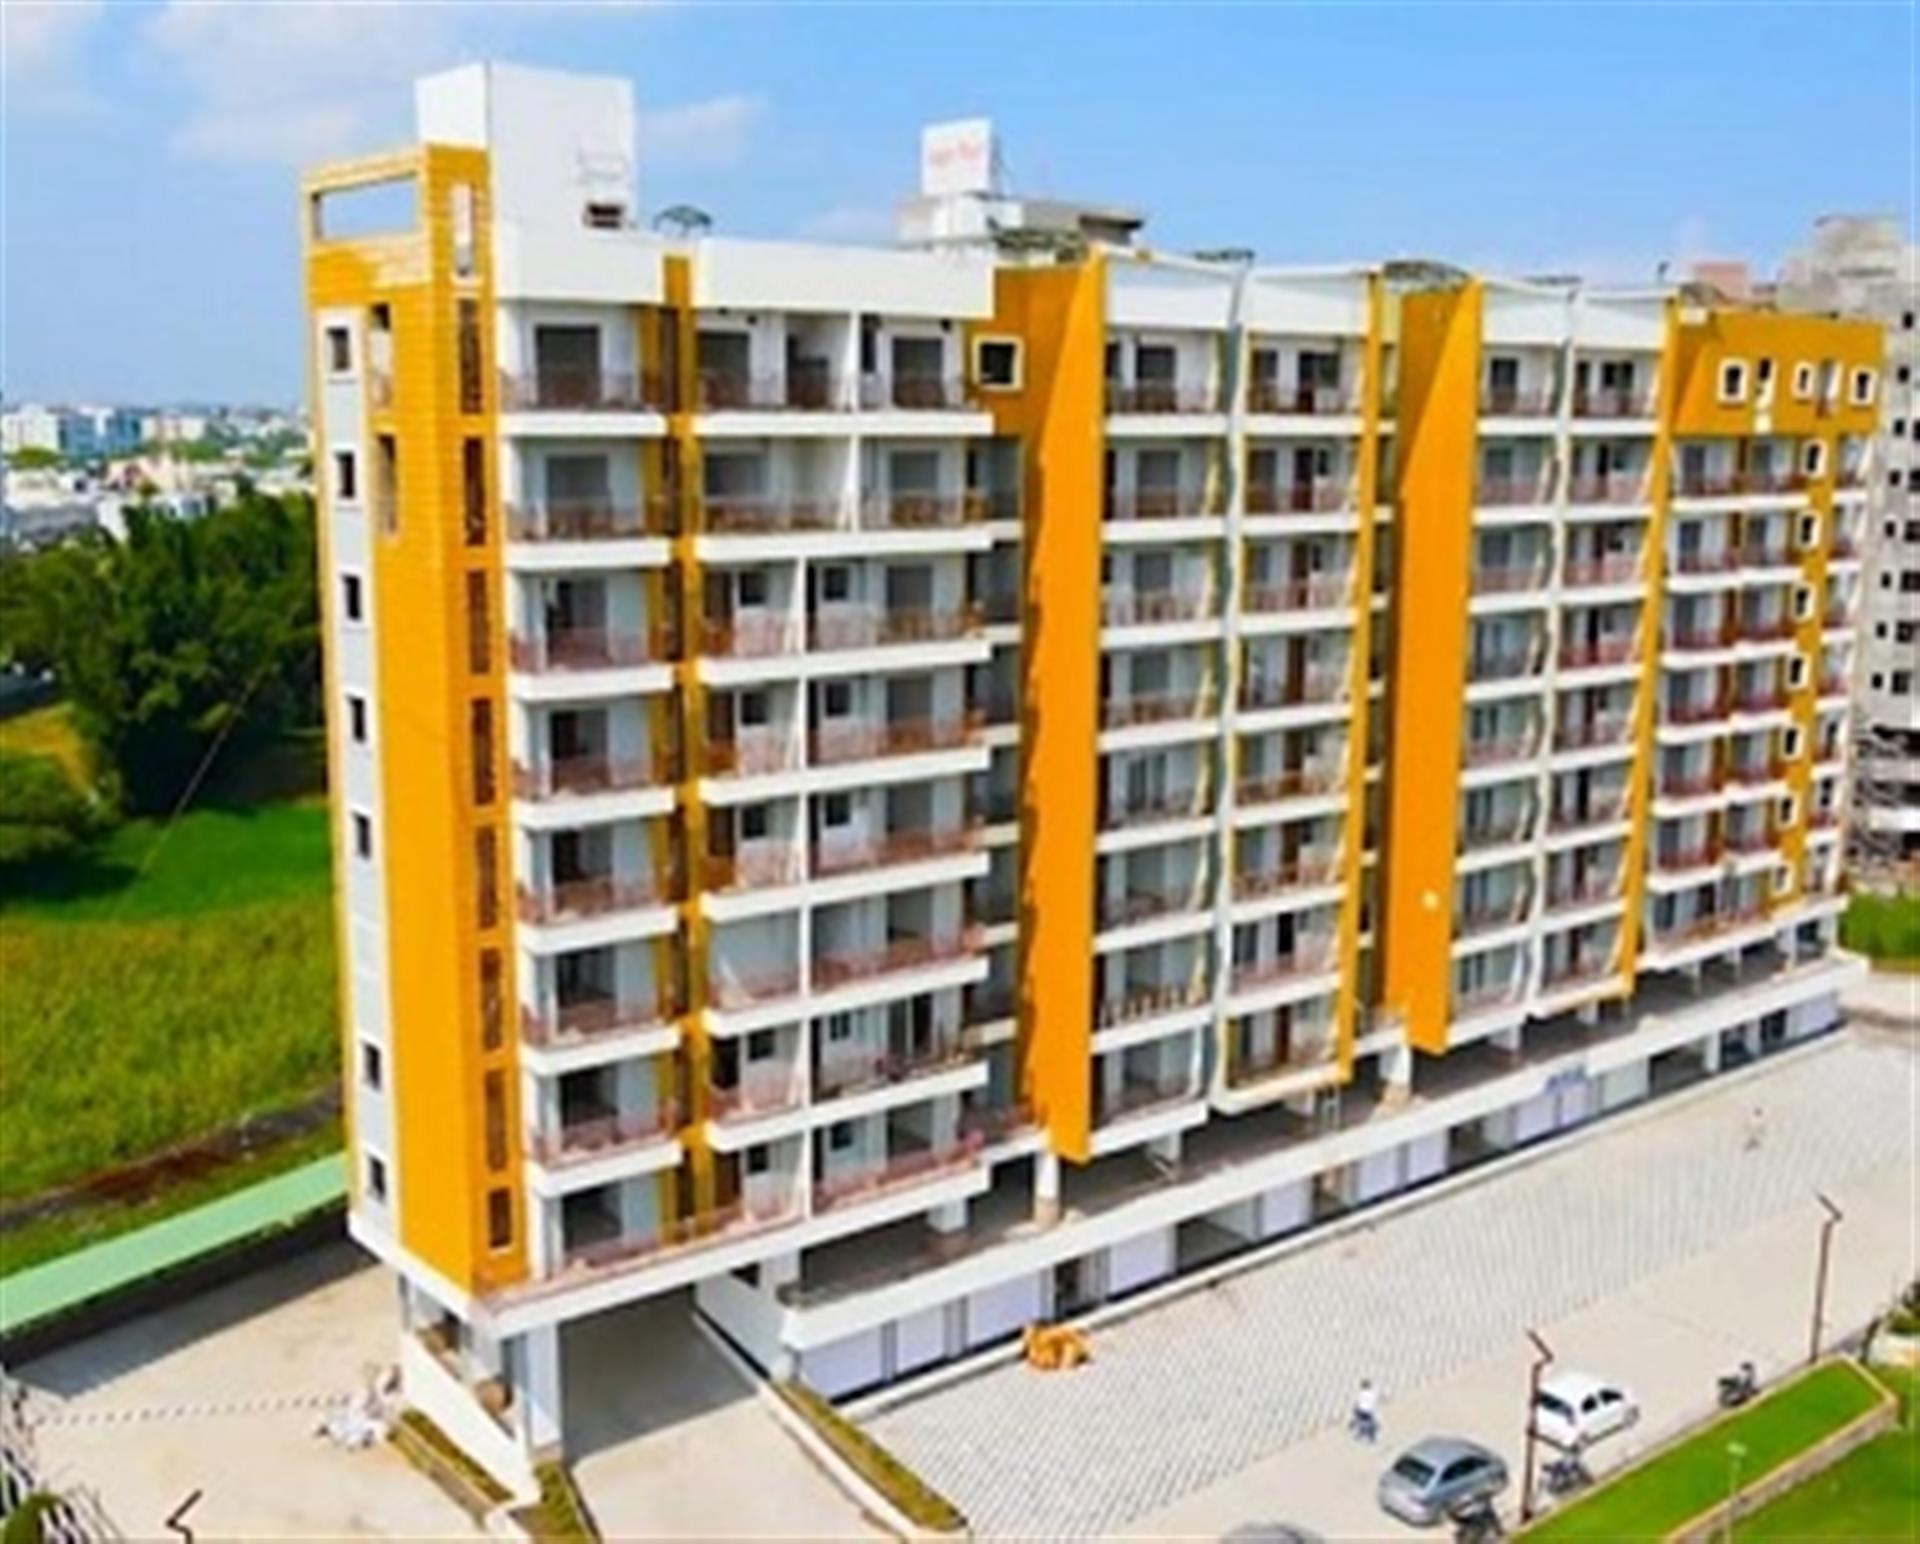 sagar-pearl-phase-2-hoshangabad-road-bhopal-2-3-bhk-apartment